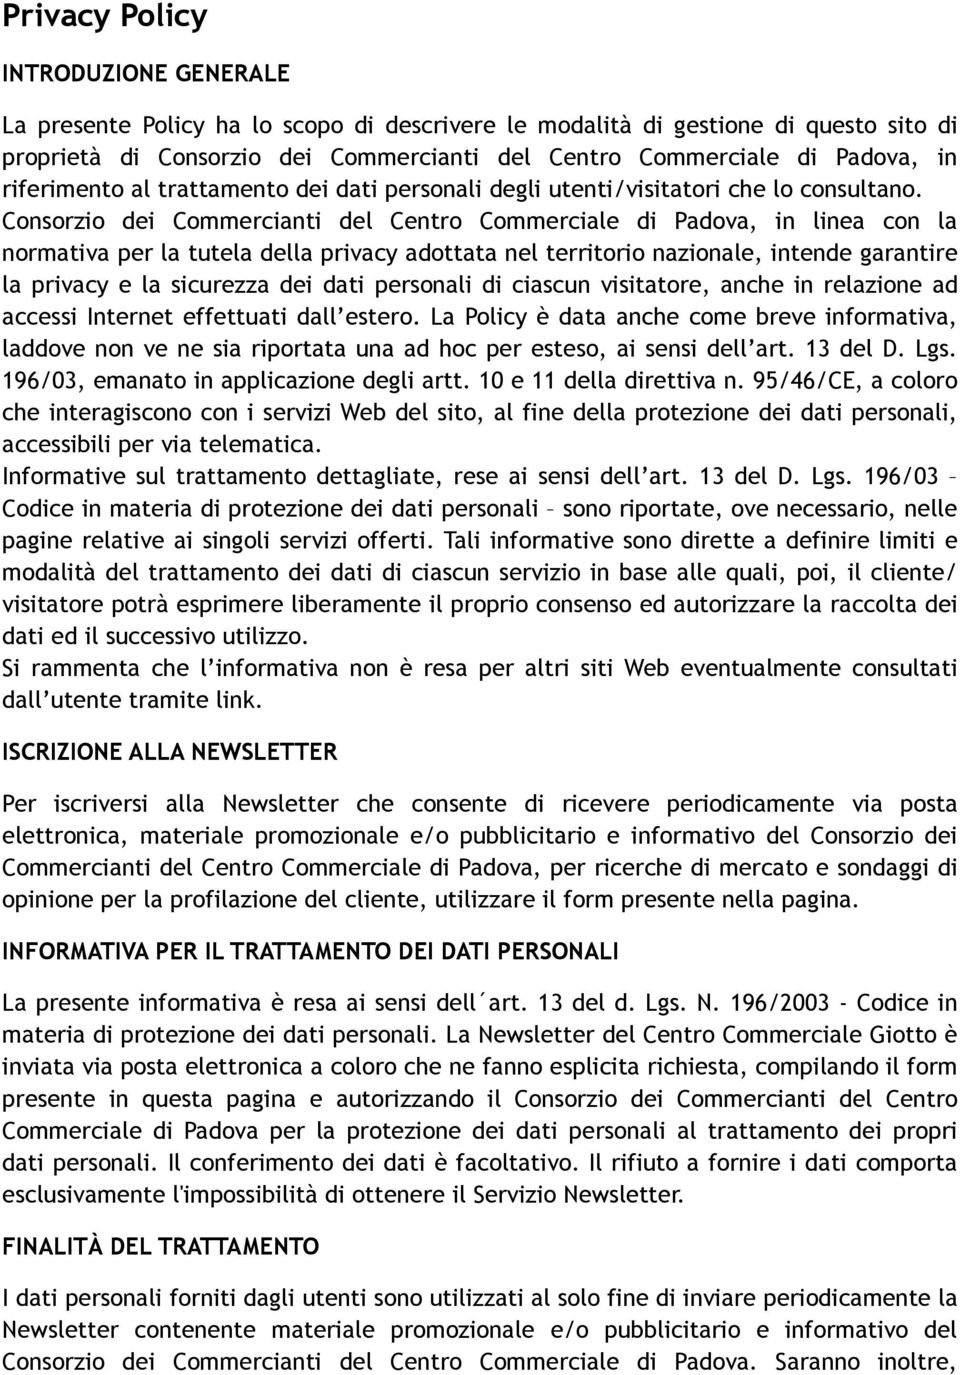 Consorzio dei Commercianti del Centro Commerciale di Padova, in linea con la normativa per la tutela della privacy adottata nel territorio nazionale, intende garantire la privacy e la sicurezza dei